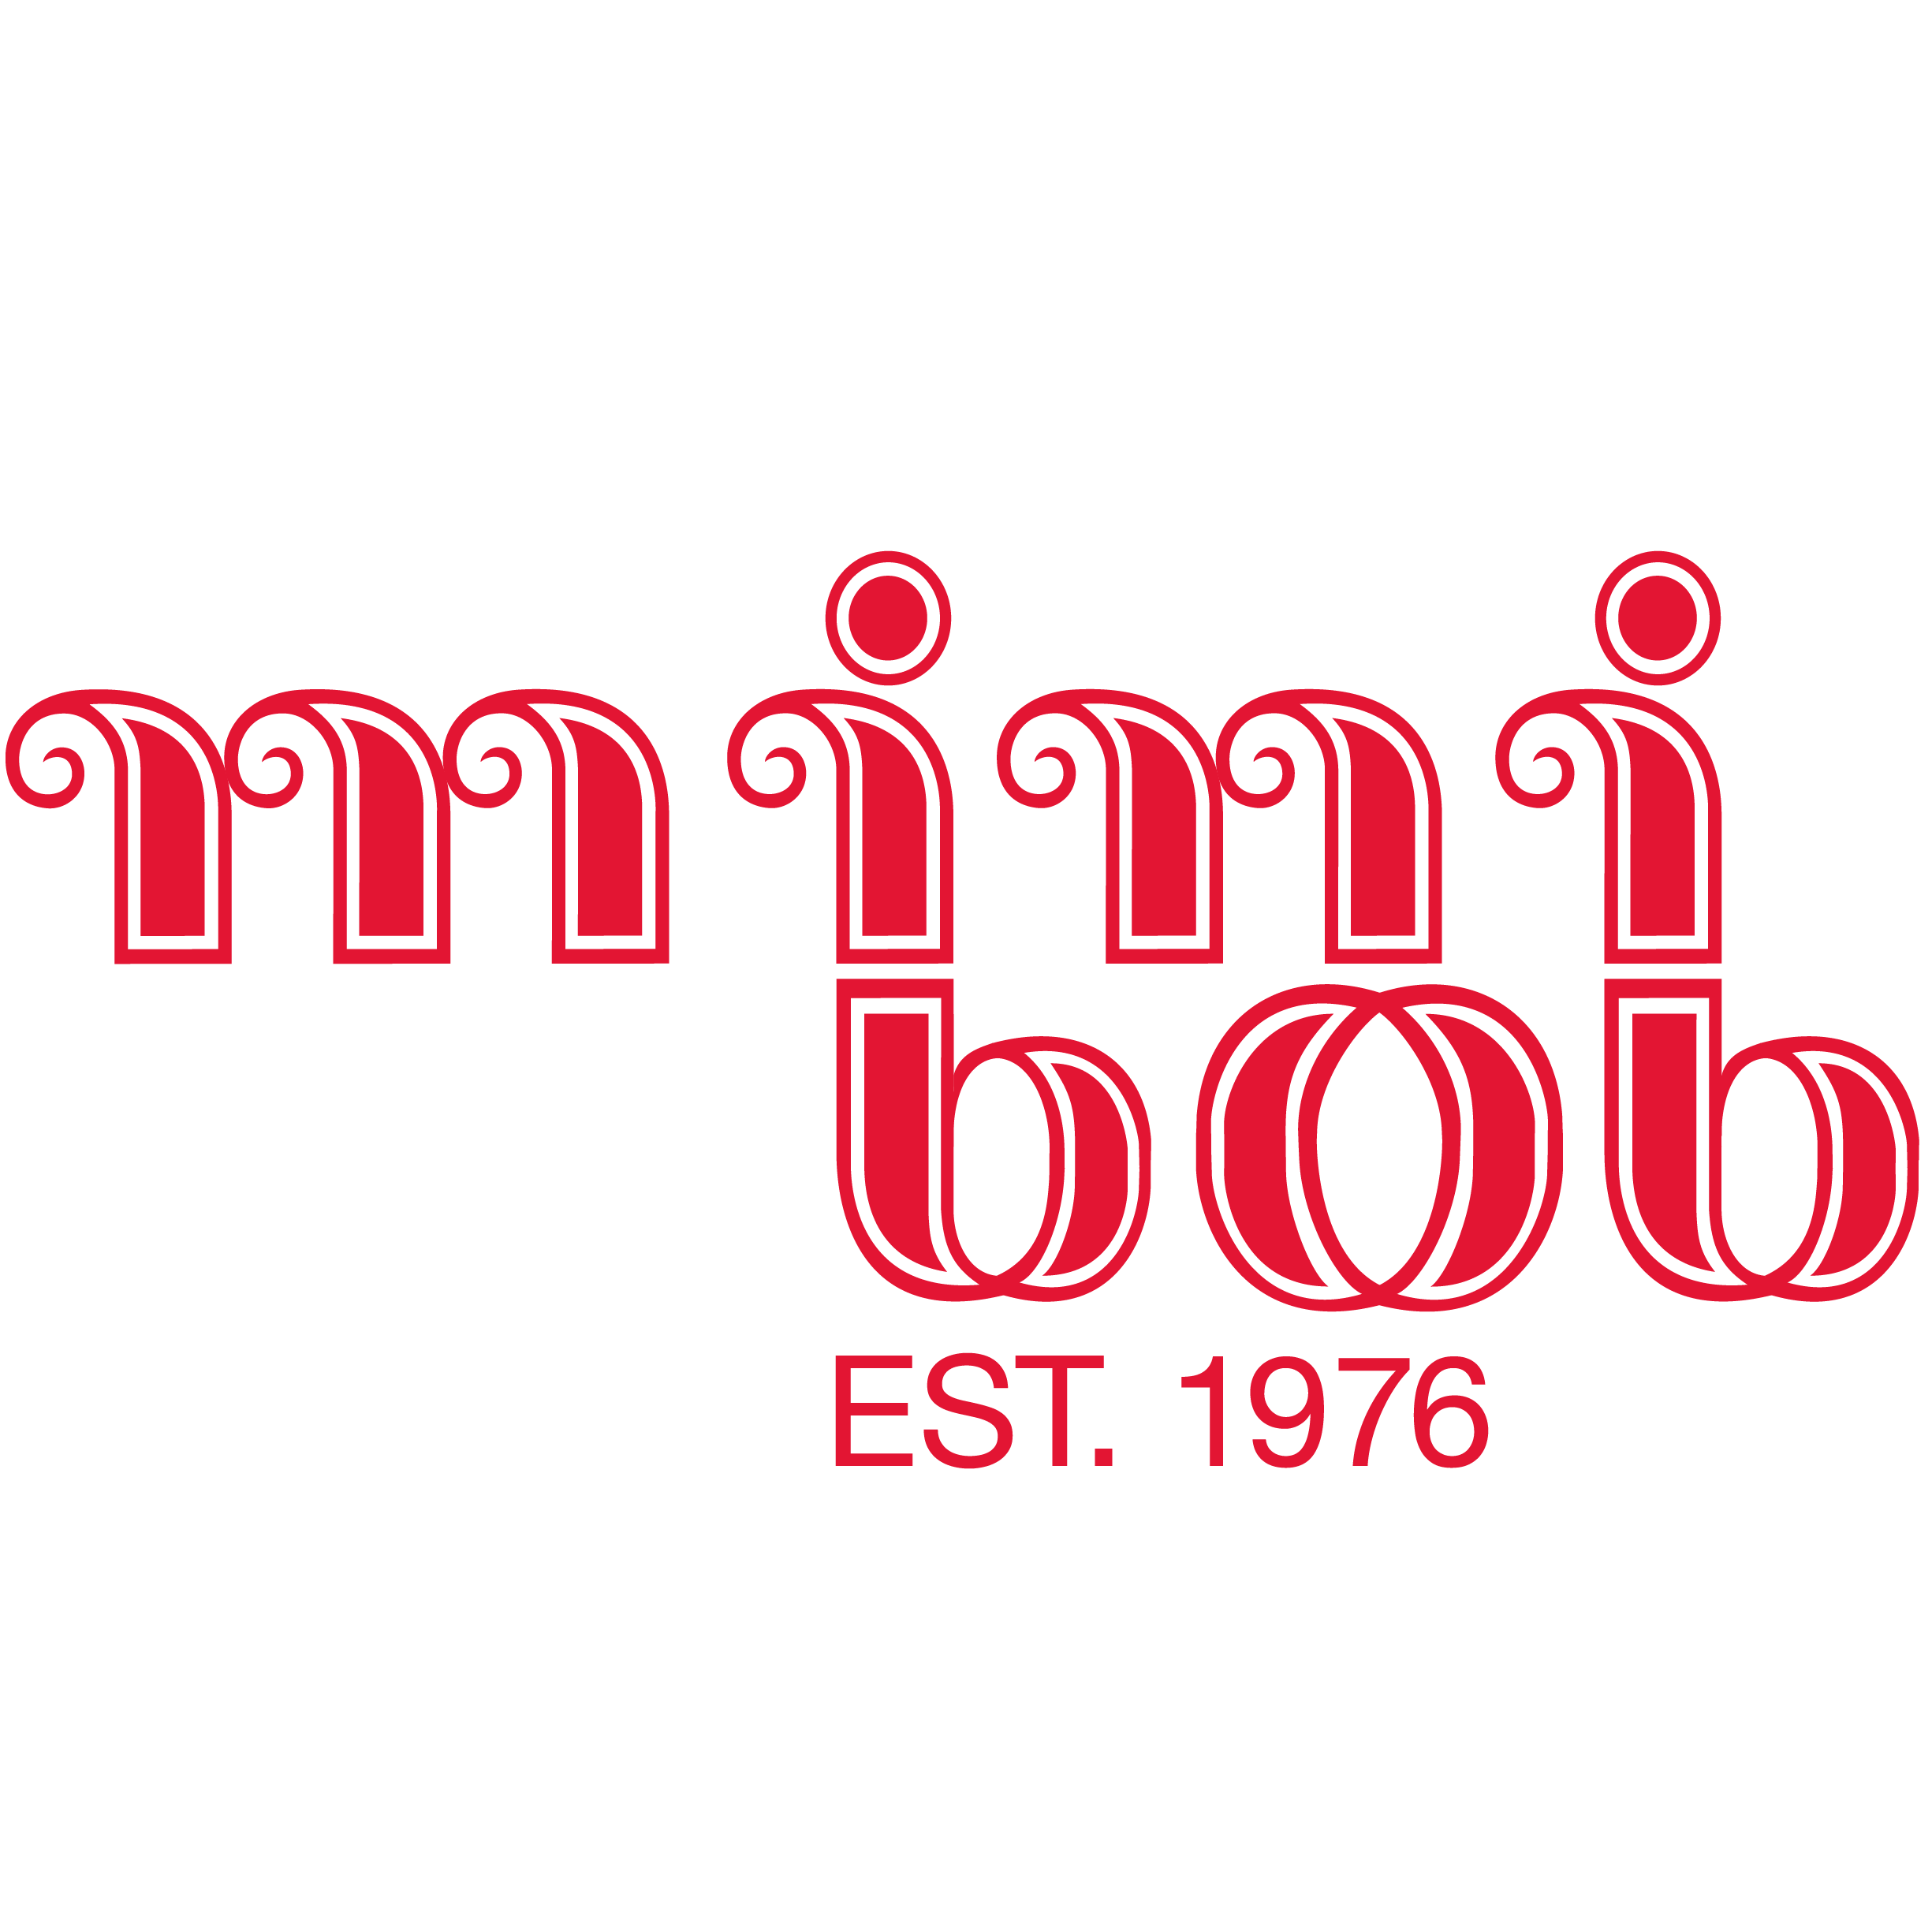 Home of mini bob - the original mini luge - Mini Bob